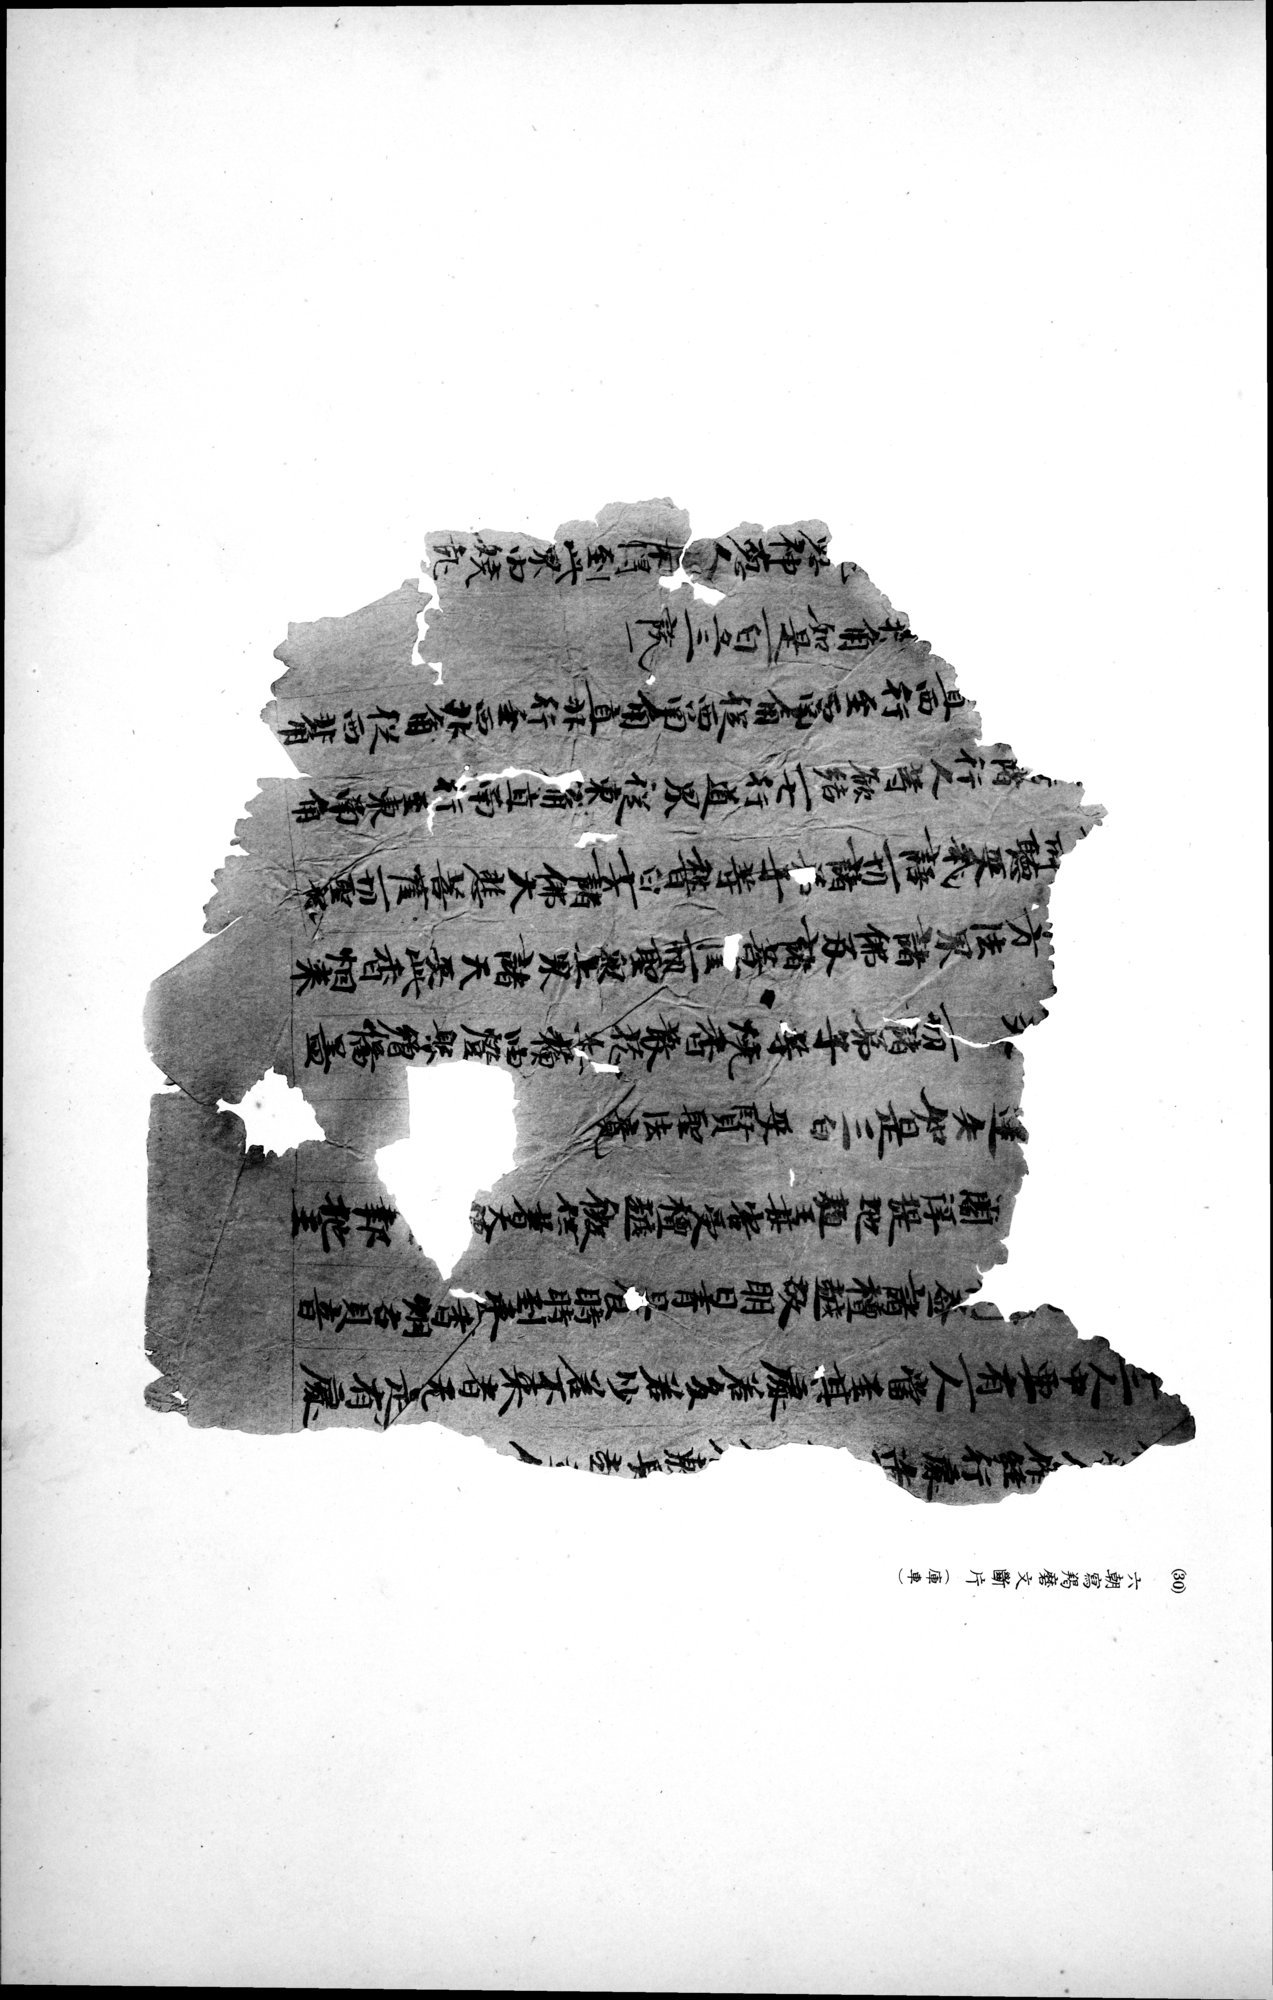 西域考古図譜 : vol.2 / Page 75 (Grayscale High Resolution Image)